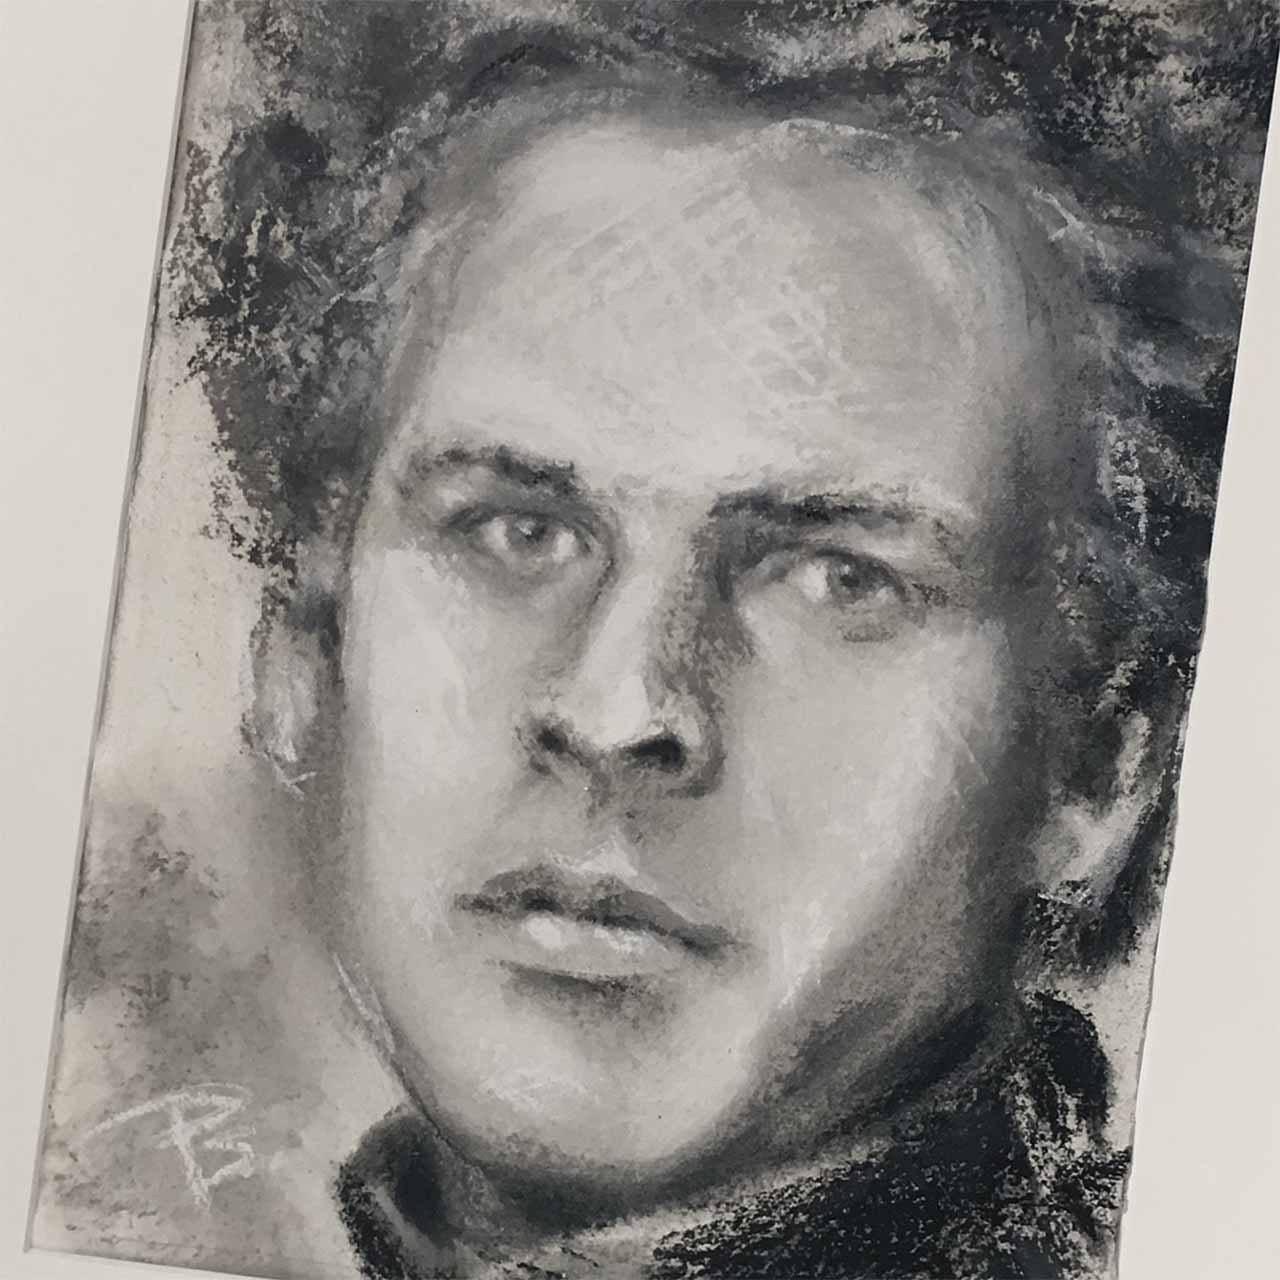 Portrættegning i kridt af Art Garfunkel tegnet på bomuld af portrættegner Peter Simonsen